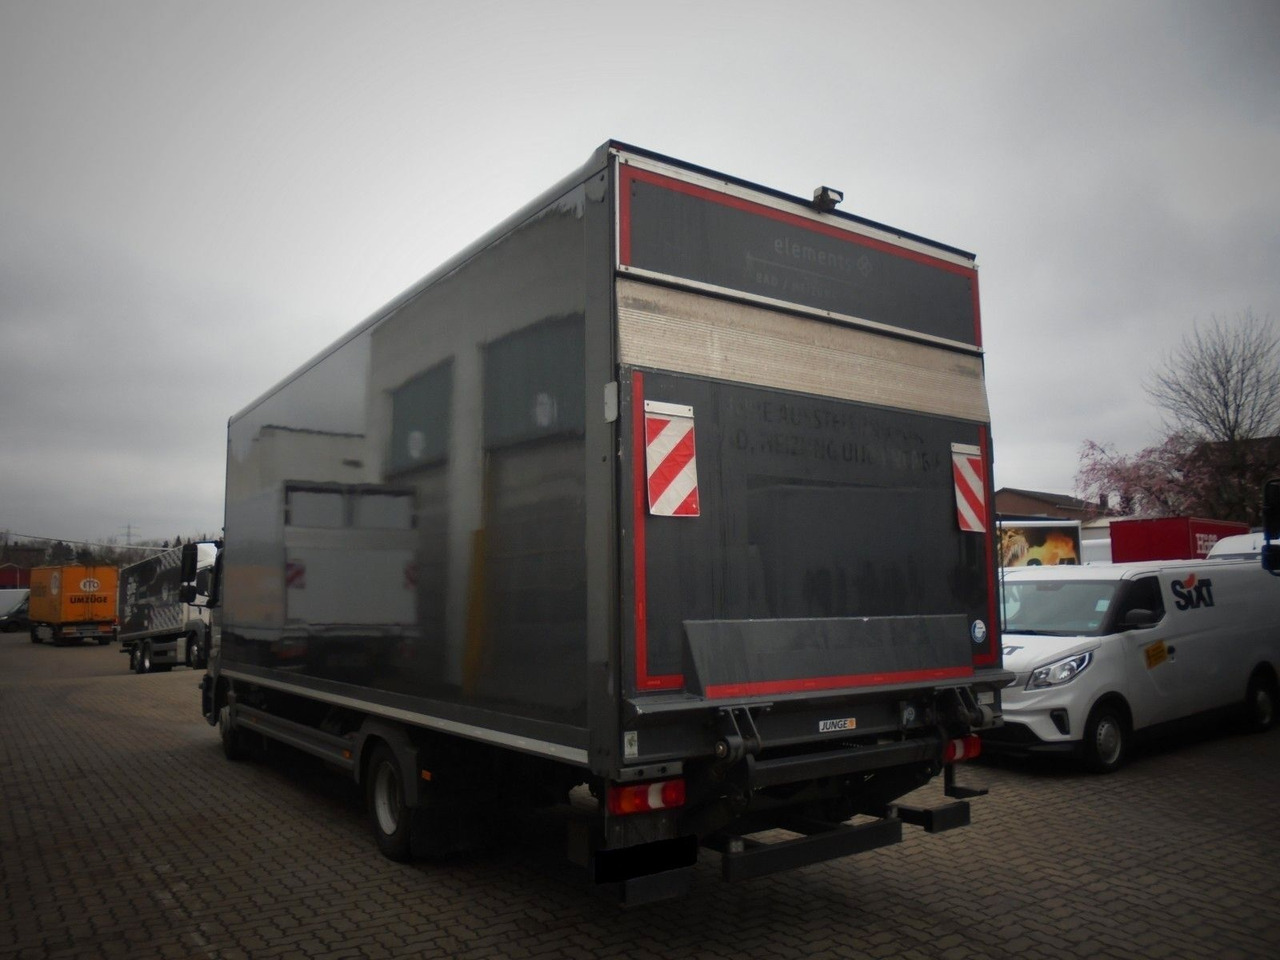 Kapalı kasa kamyon Mercedes-Benz Atego 1021 Koffer + tail lift: fotoğraf 5